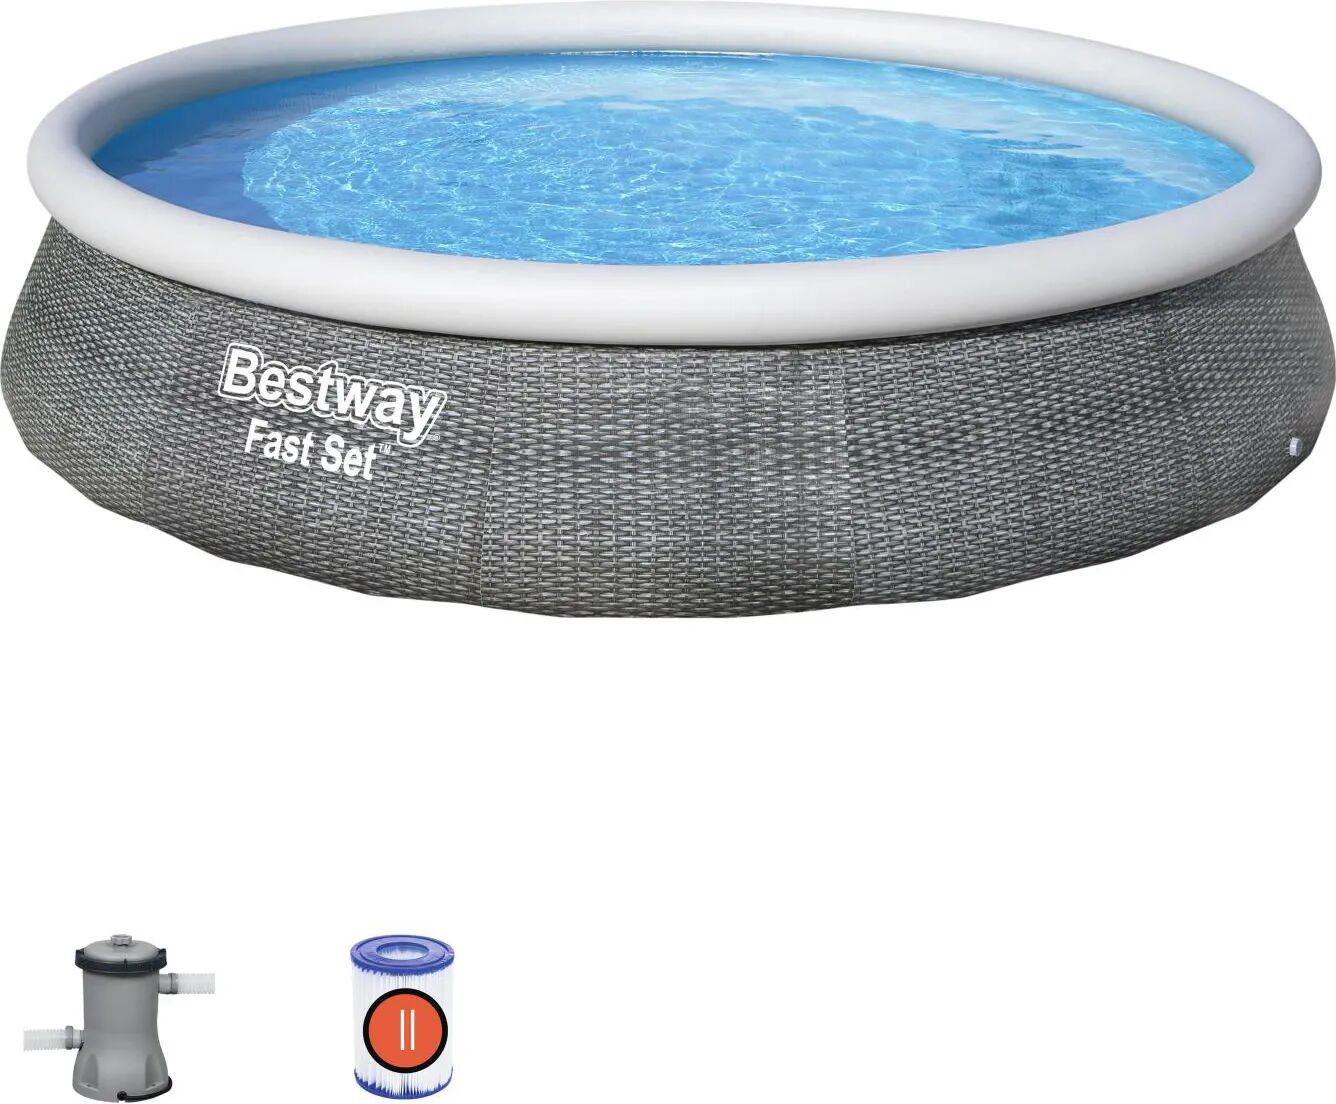 bestway piscina fuori terra autoportante gonfiabile da esterno 7340 litri piscina da giardino in pvc ø 396 cm colore grigio - 57376 fast set